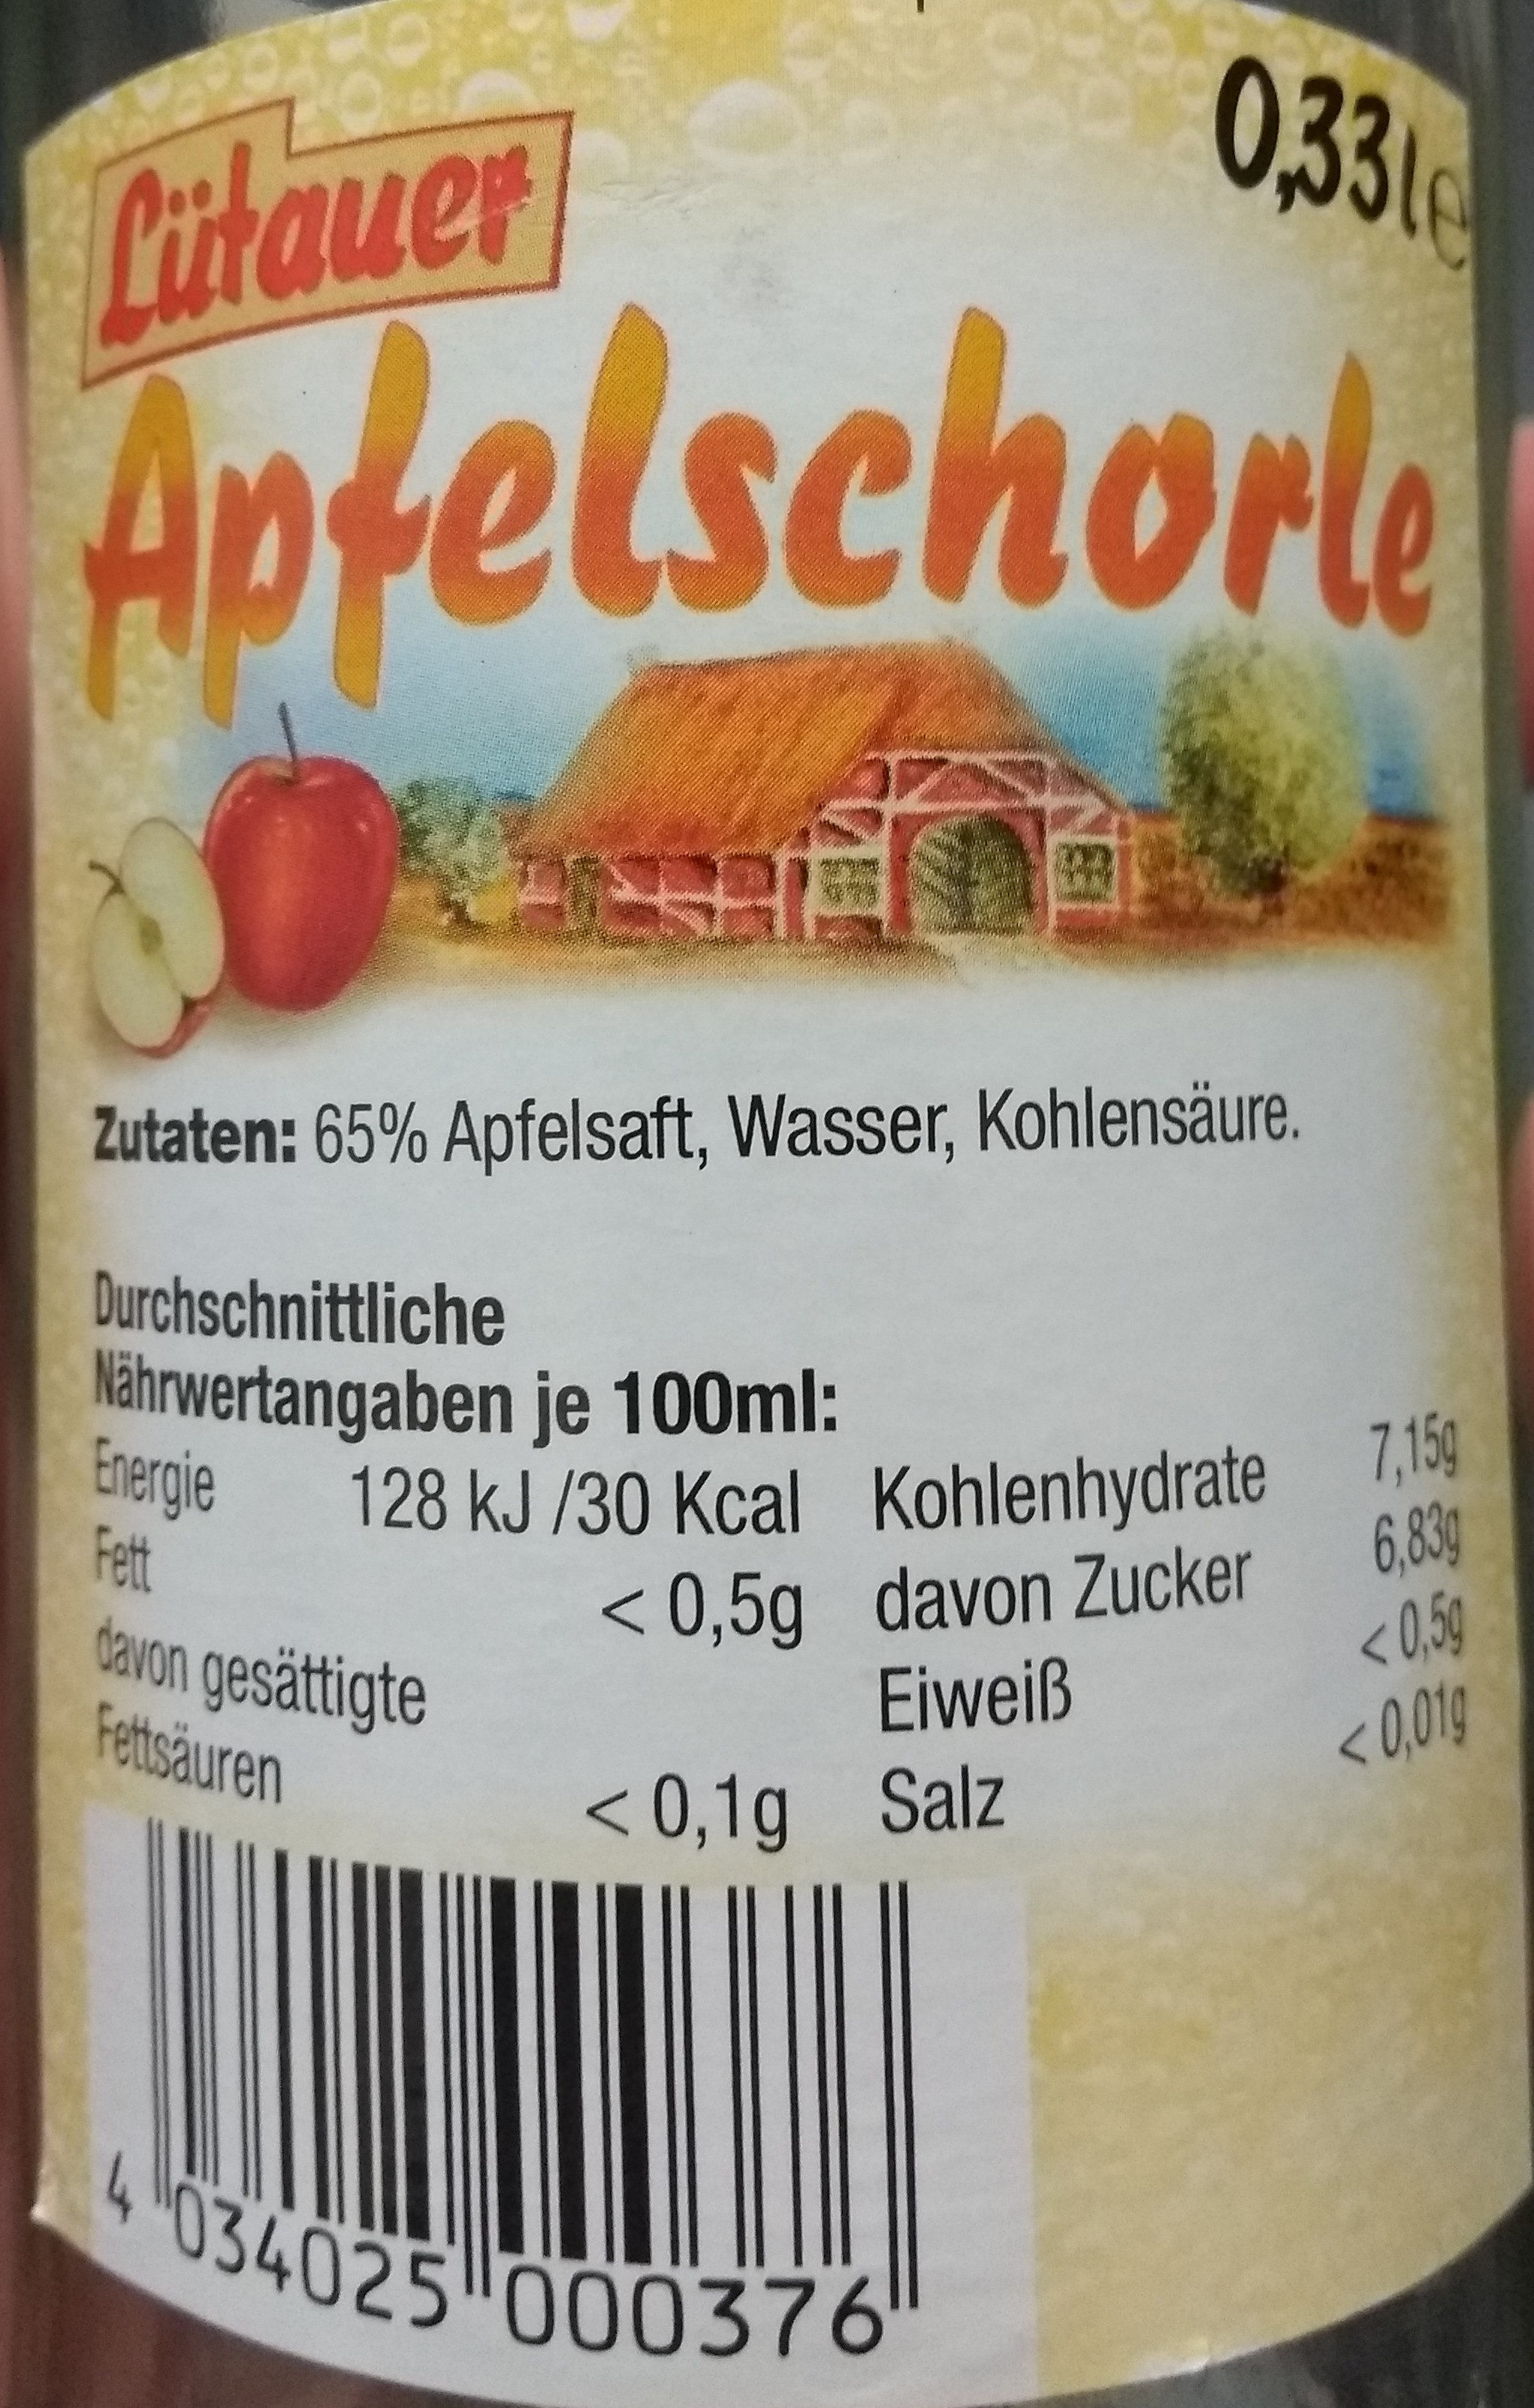 Lütauer apfelschore - Ingredients - de